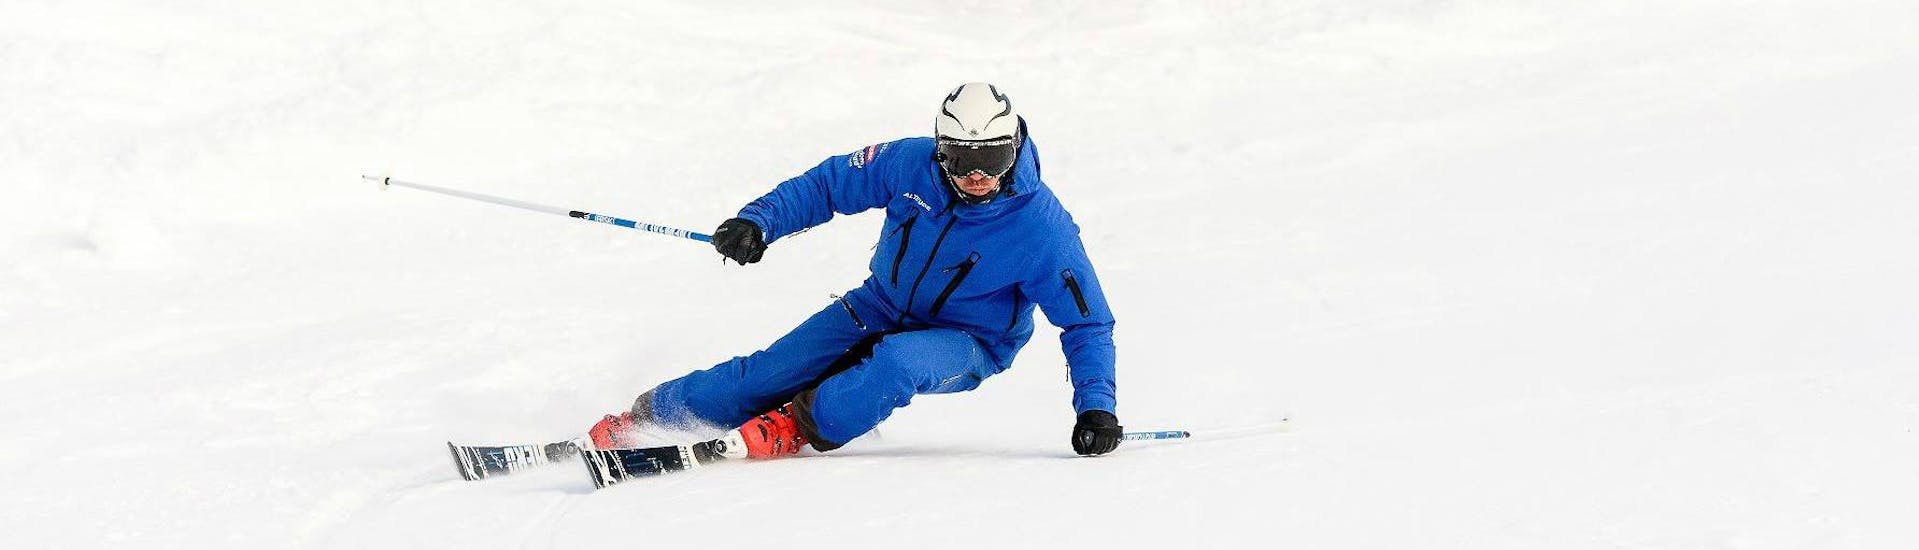 Durante las clases particulares de esquí para adultos de todos los niveles, con Altitude Ski School Zermatt, un instructor de esquí está demostrando la técnica de tallado correcta.